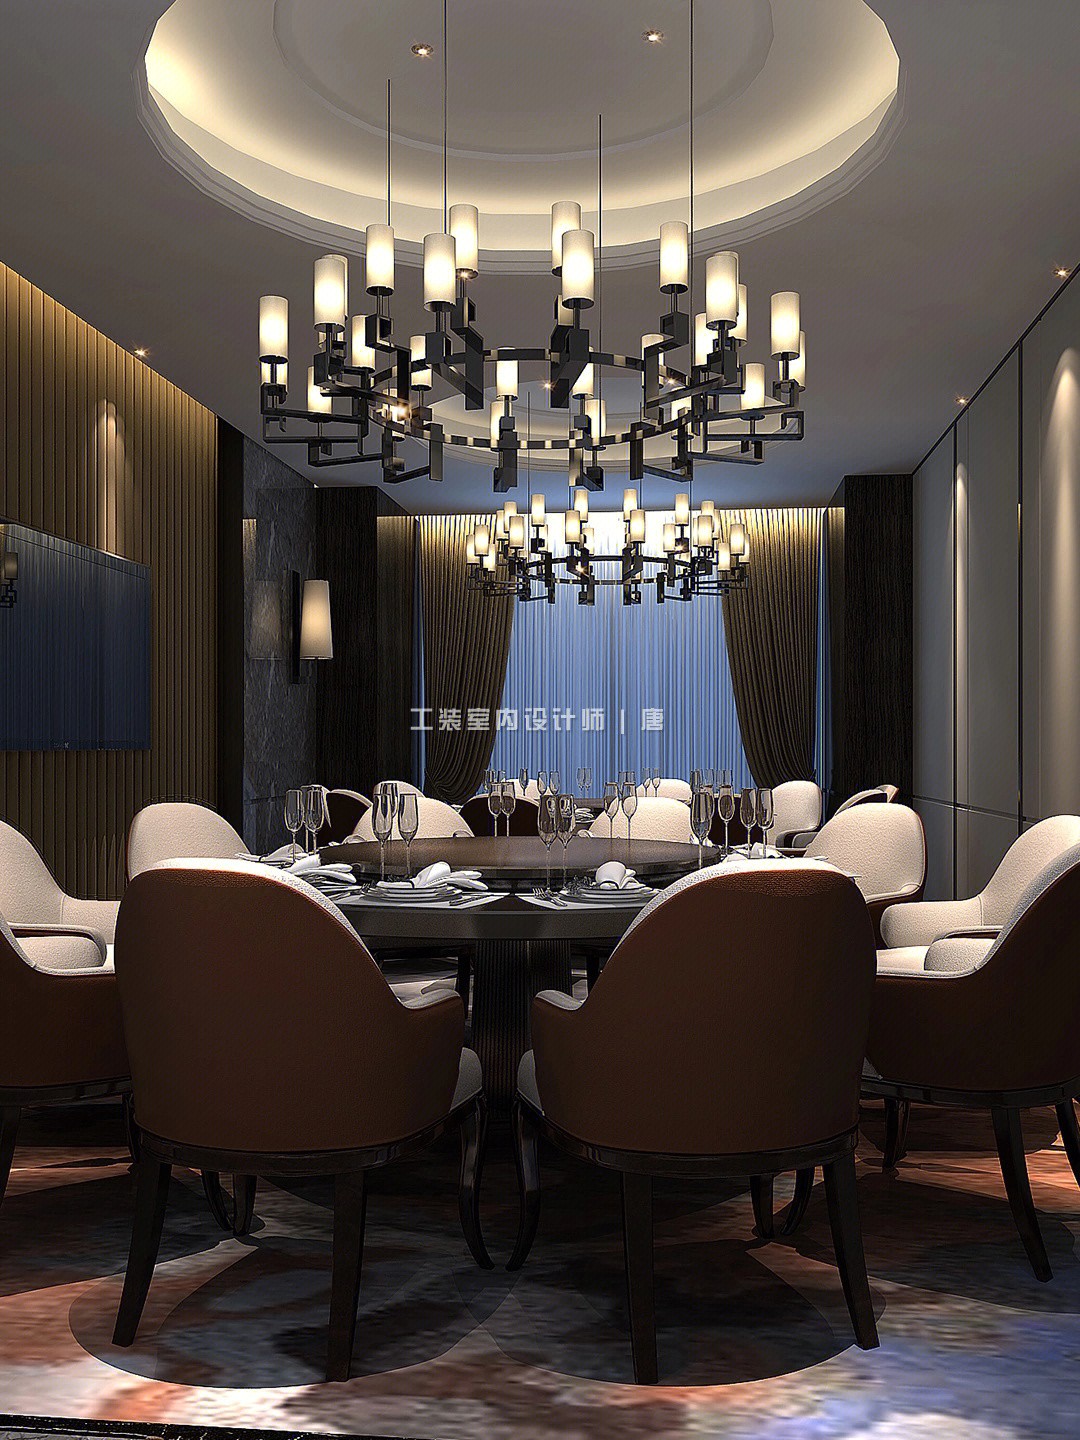 分享36套星级酒店餐厅包房设计案例